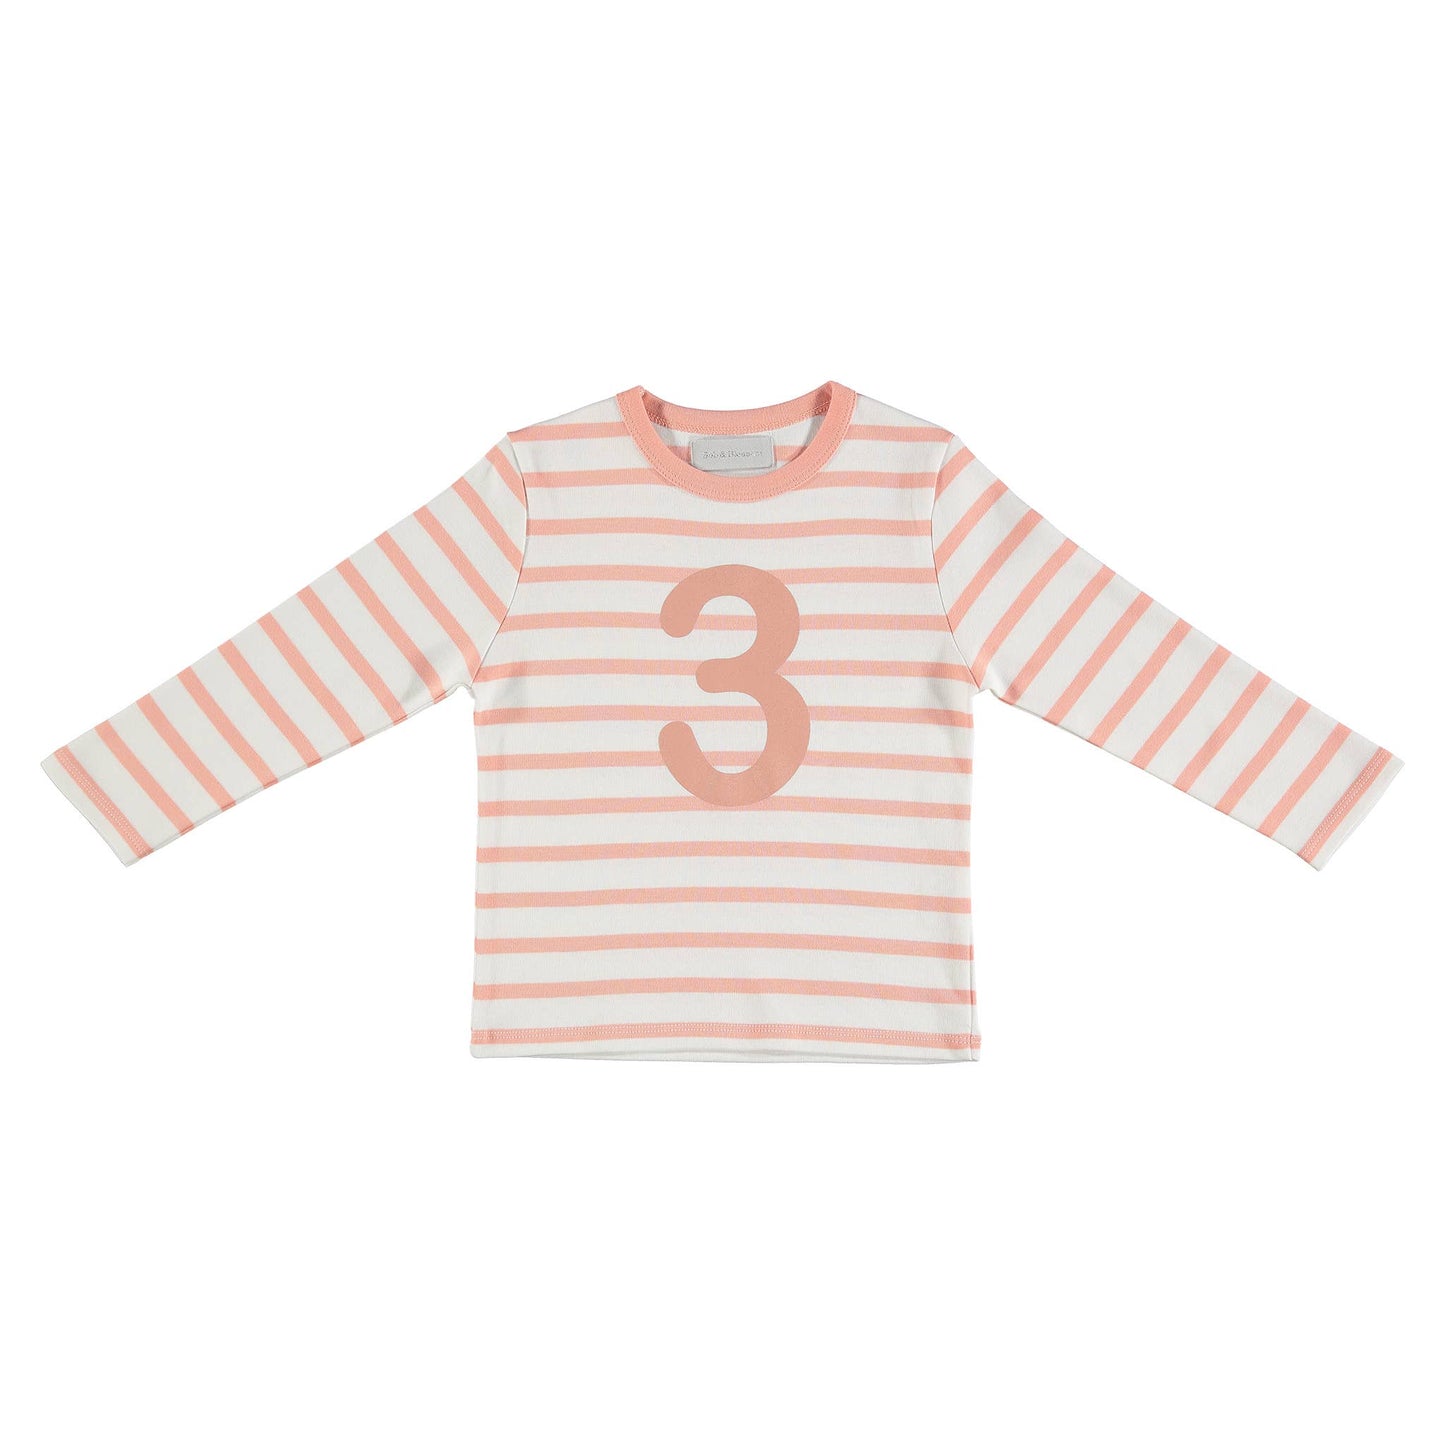 Shrimp & White 3 (Pink) Shirt